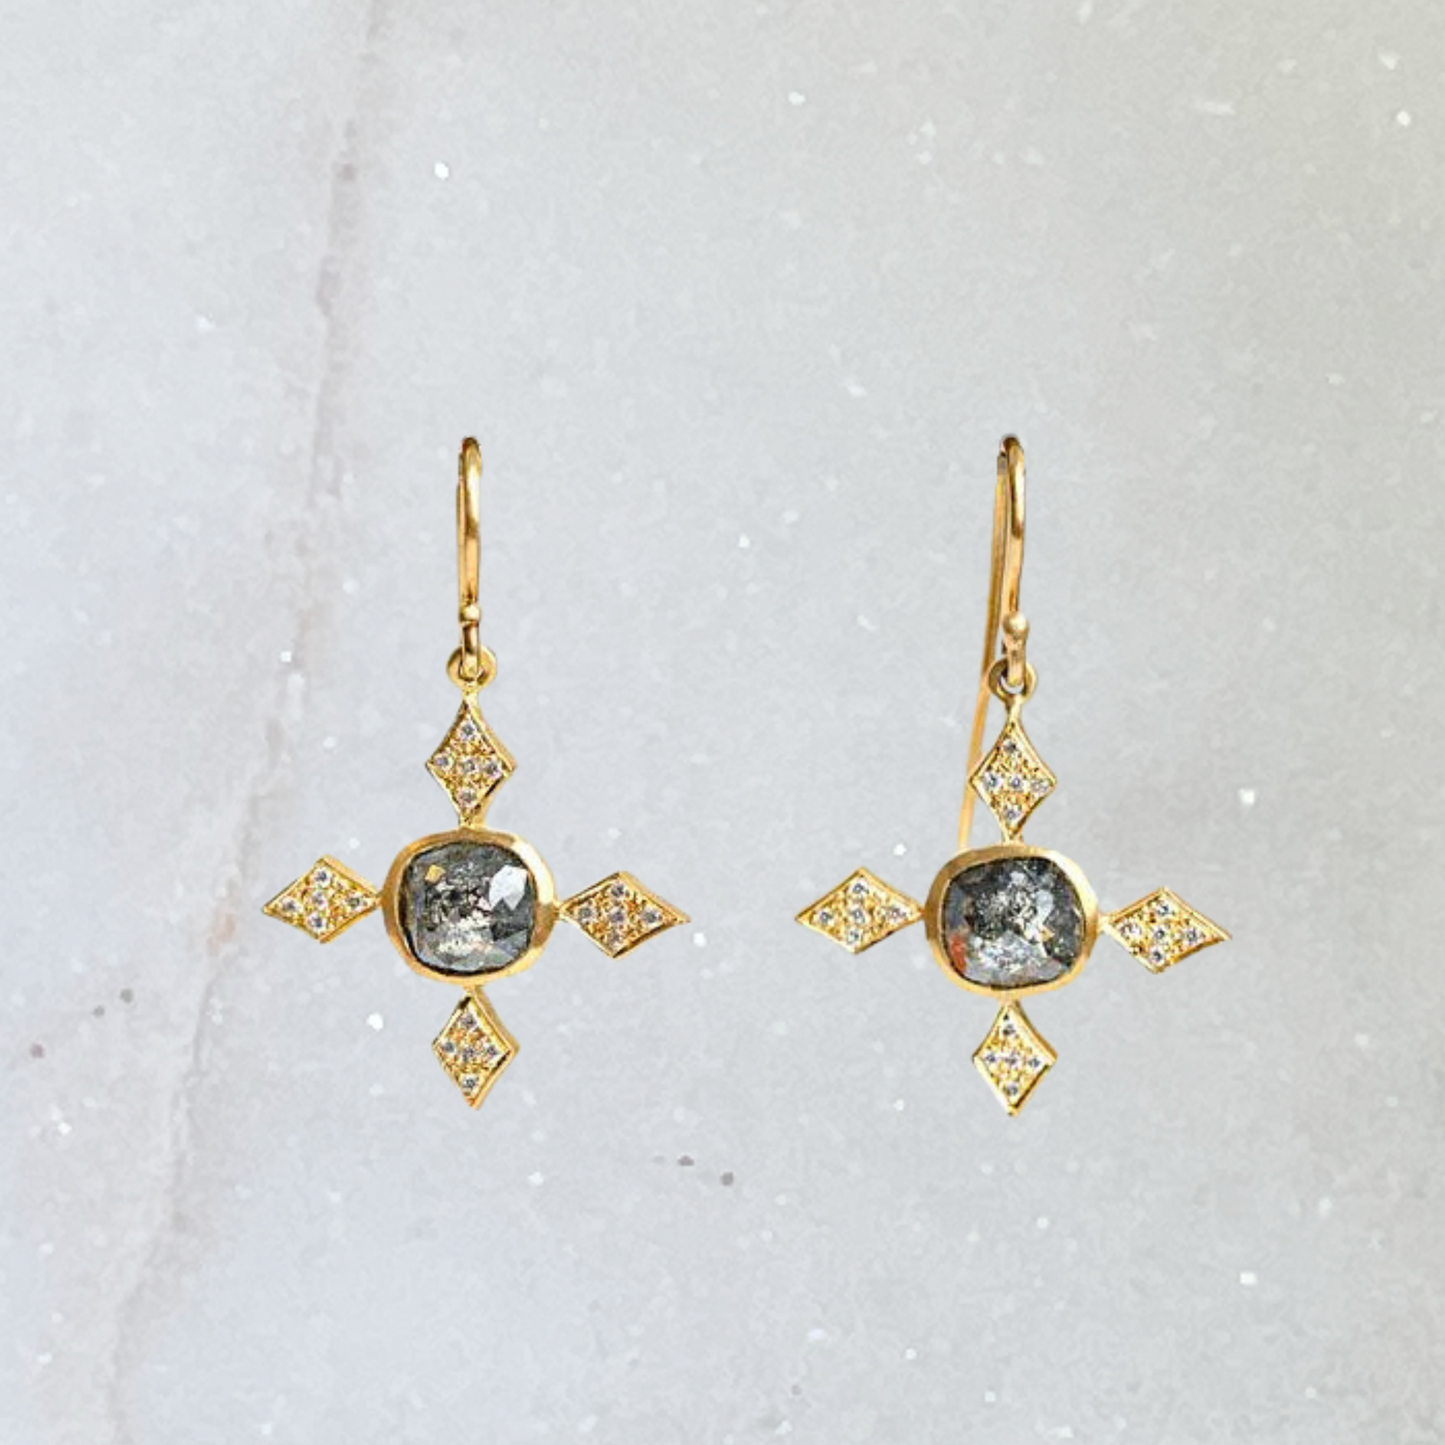 St Etienne earrings